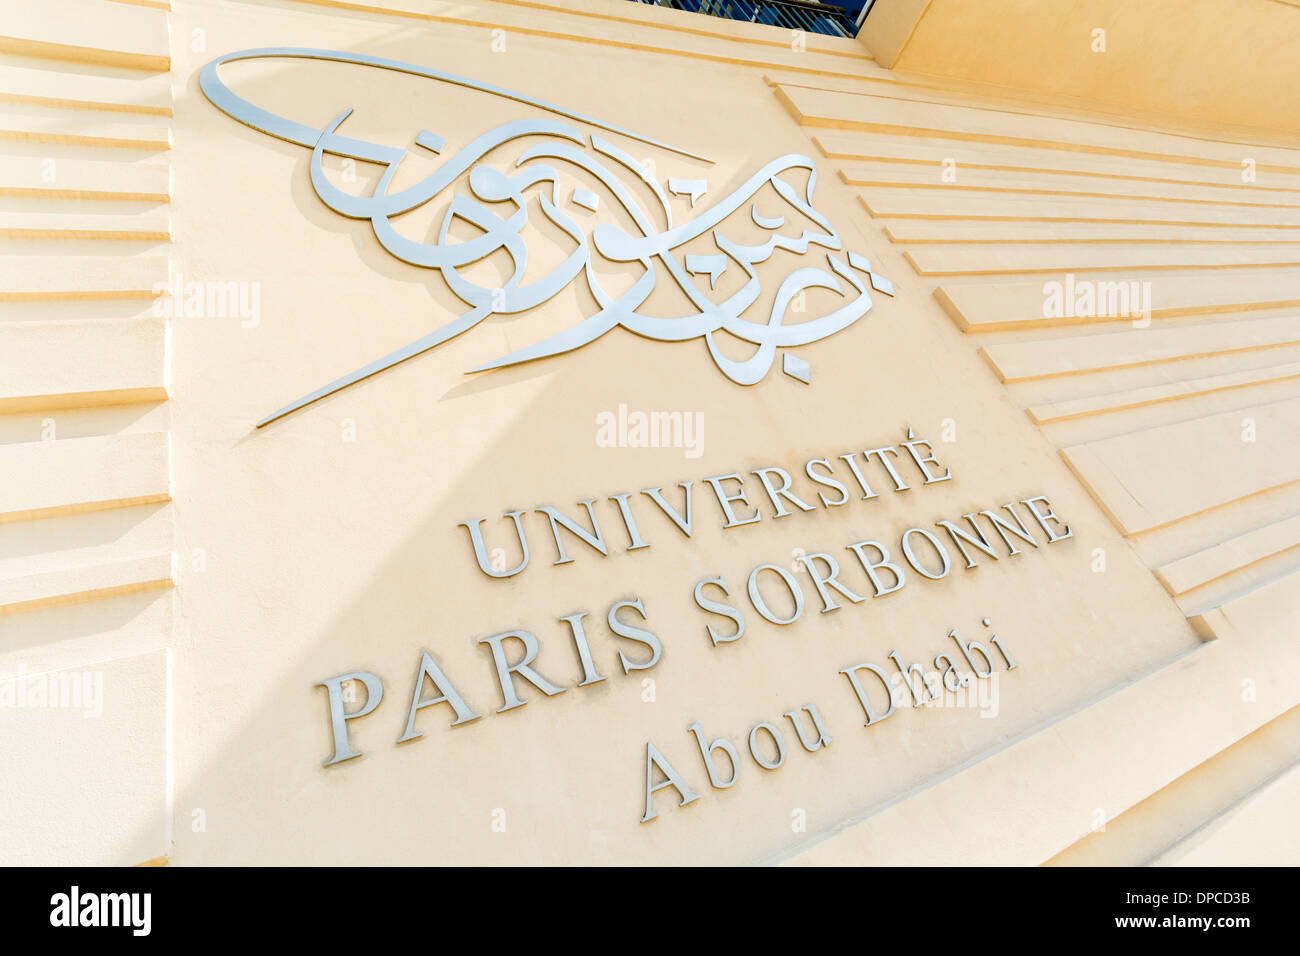 Abu Dhabi-Campus der Universität Paris-Sorbonne in Vereinigte Arabische Emirate VAE Stockfoto